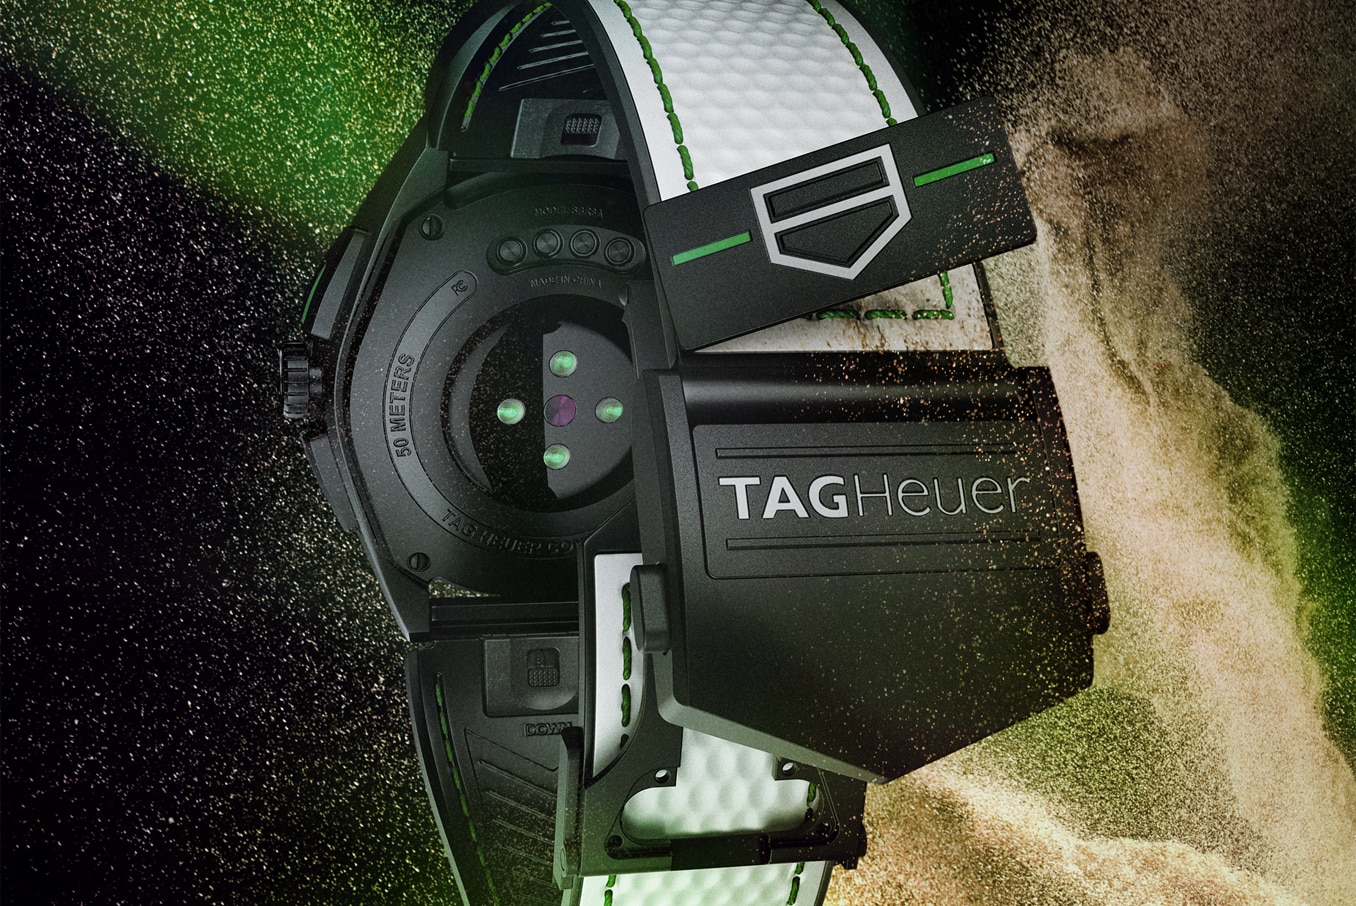 Jogue golfe com o TAG Heuer Connected, Suporte aplicativo Golf